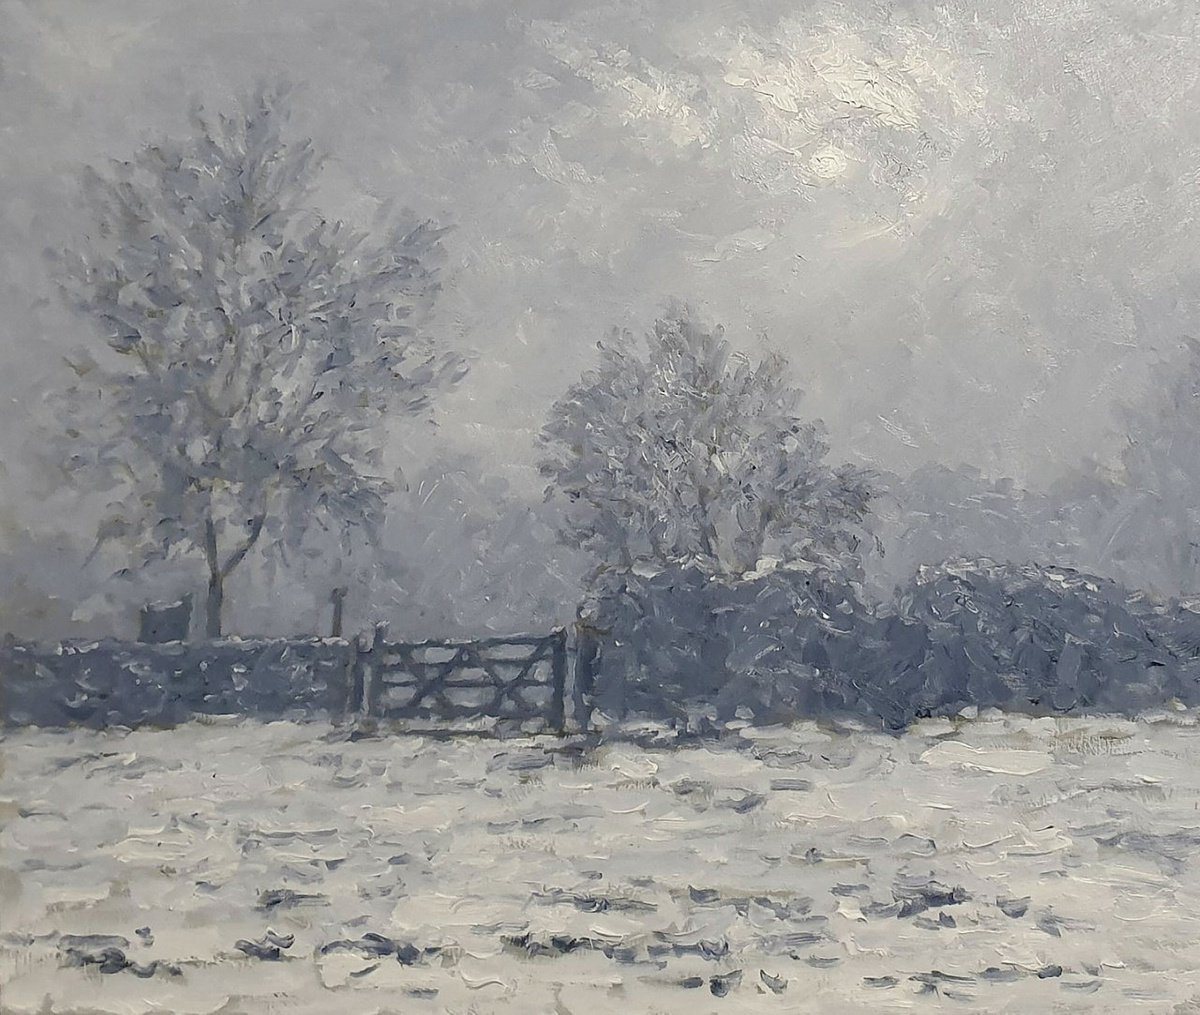 misty snow scene by Colin Ross Jack